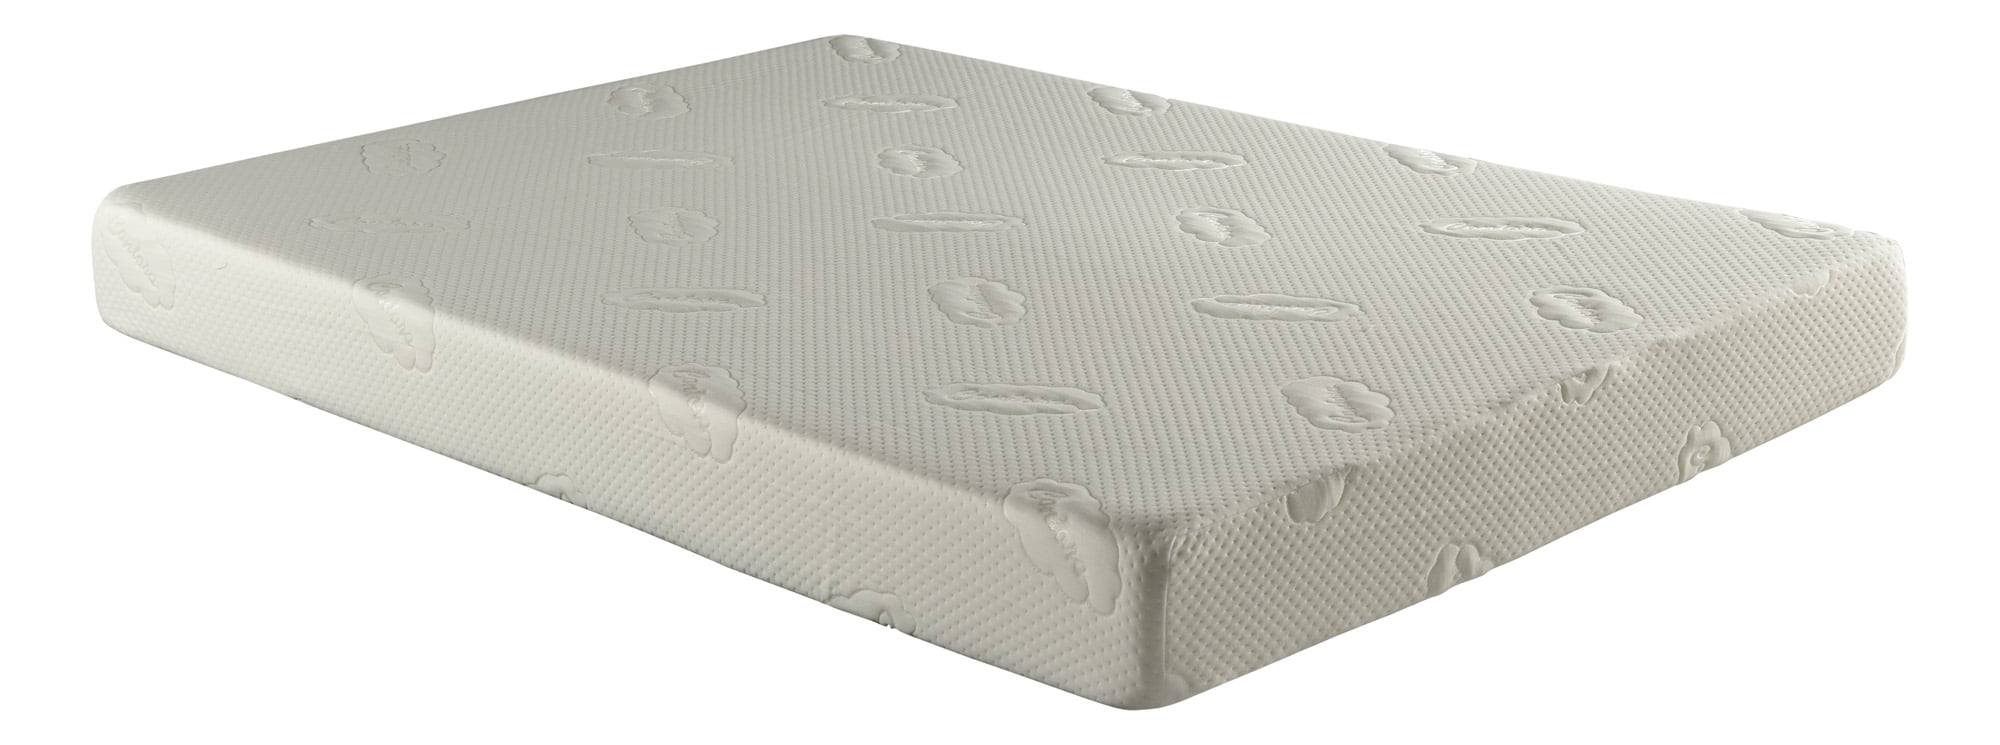 return foam mattress to walmart